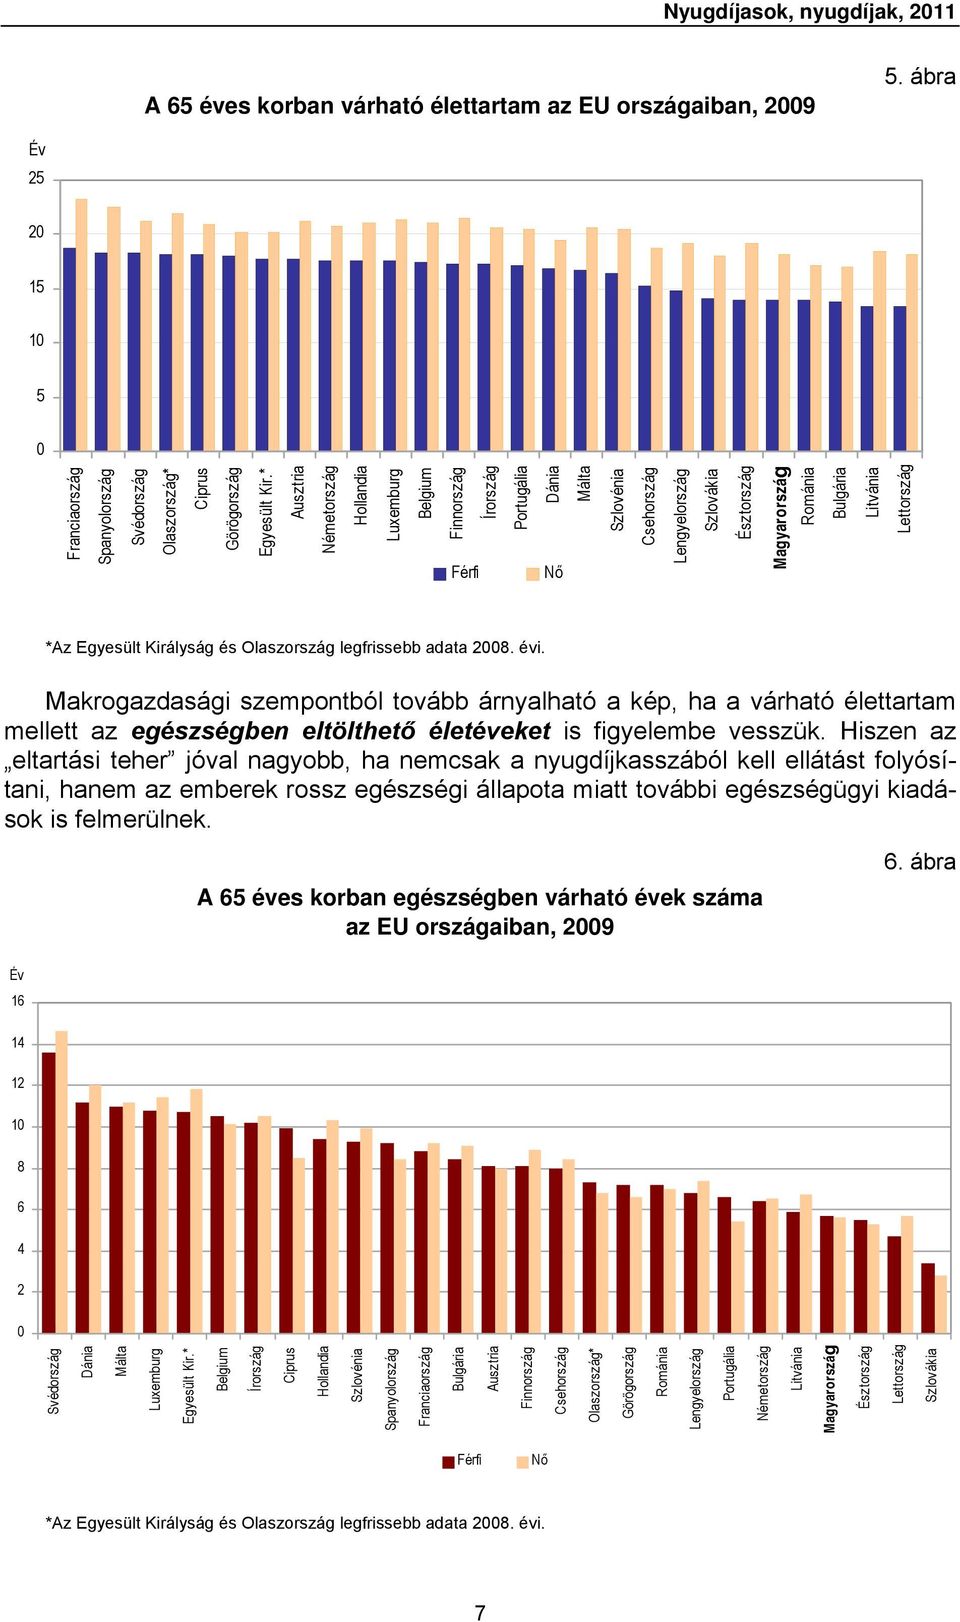 Egyesült Királyság és Olaszország legfrissebb adata 2008. évi.